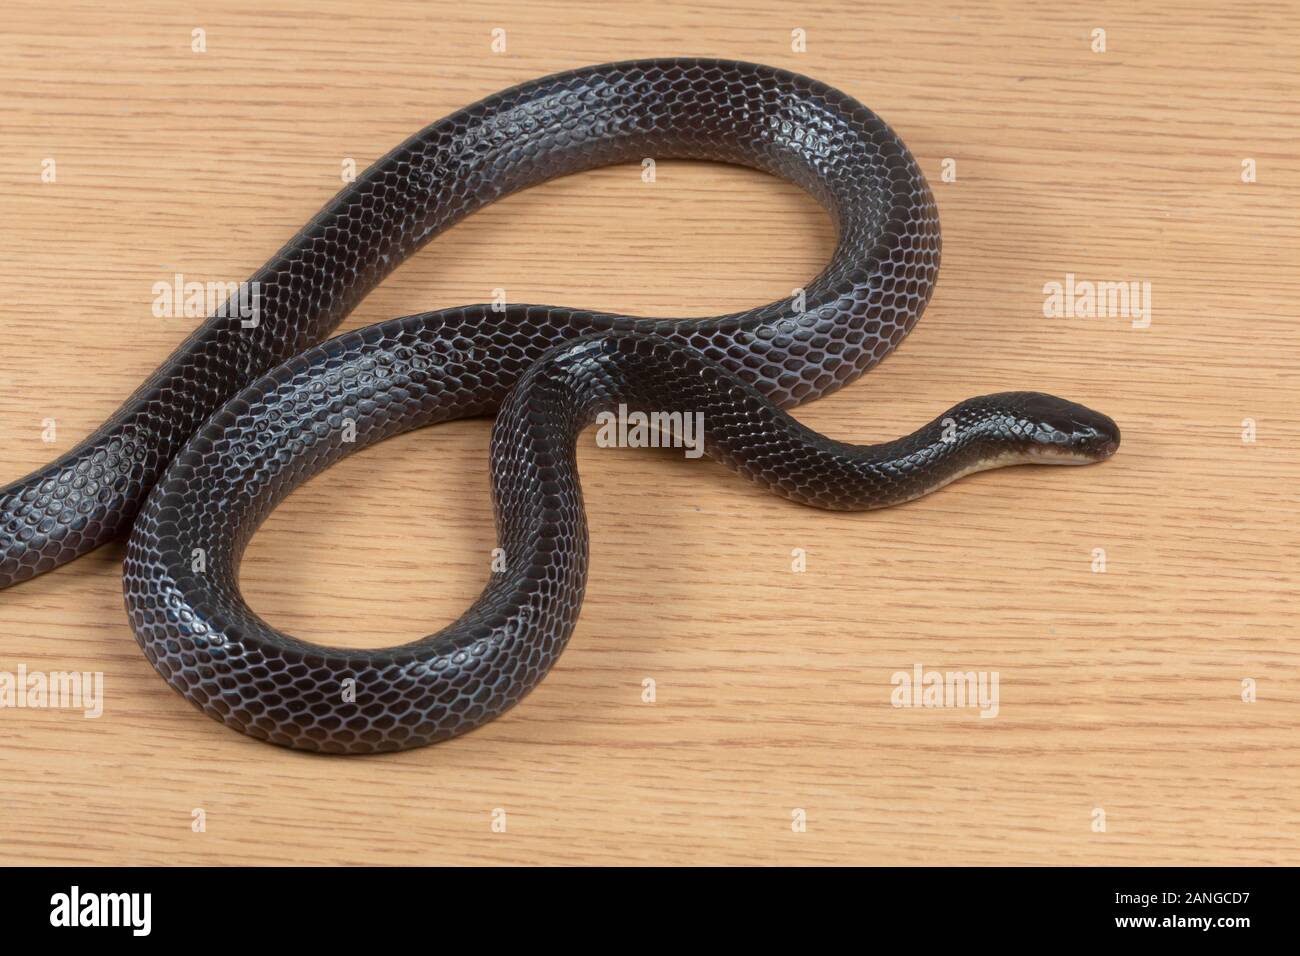 Mayor krait Bungarus negro, Níger serpiente venenosa de la familia Elapidae. La especie es endémica en el sur de Asia. Foto de stock